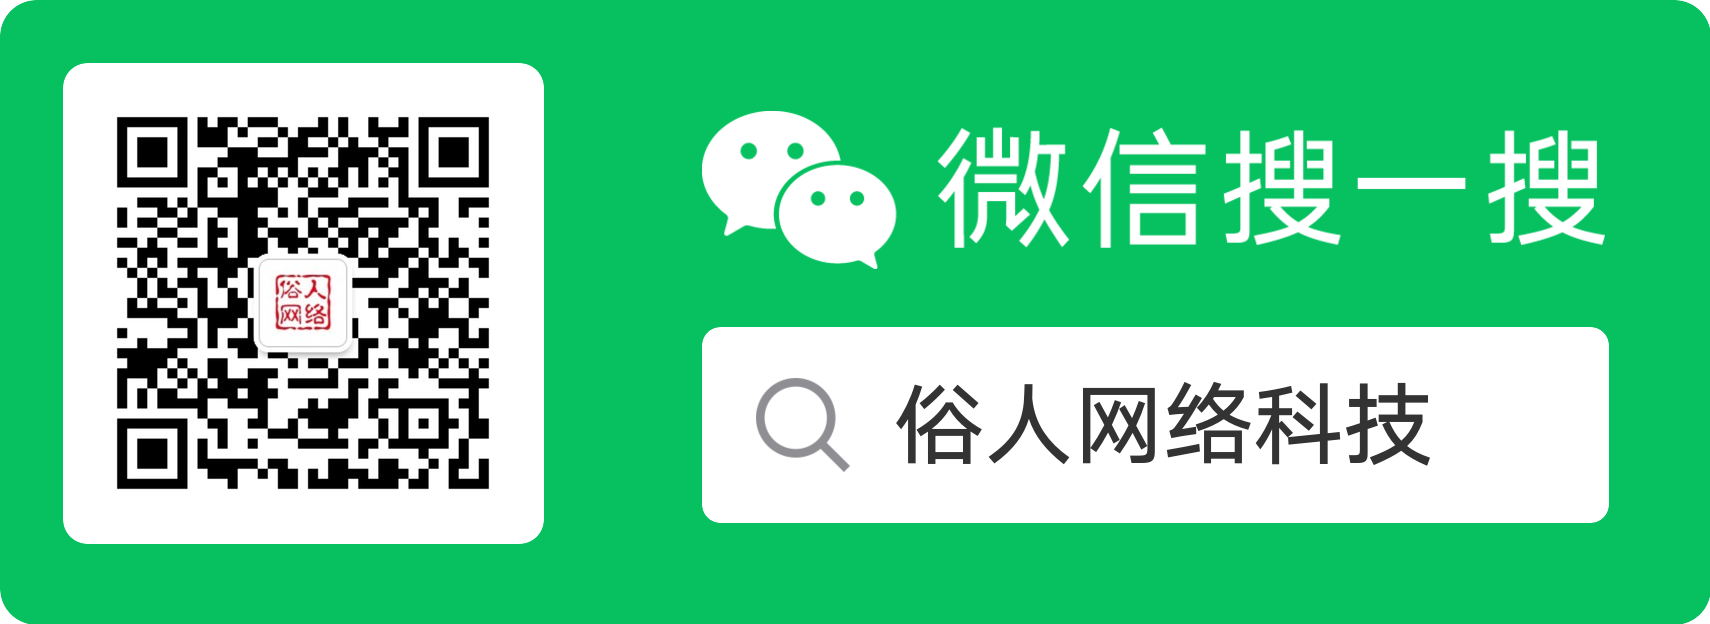 ChatGPT限制中国用户注册使用